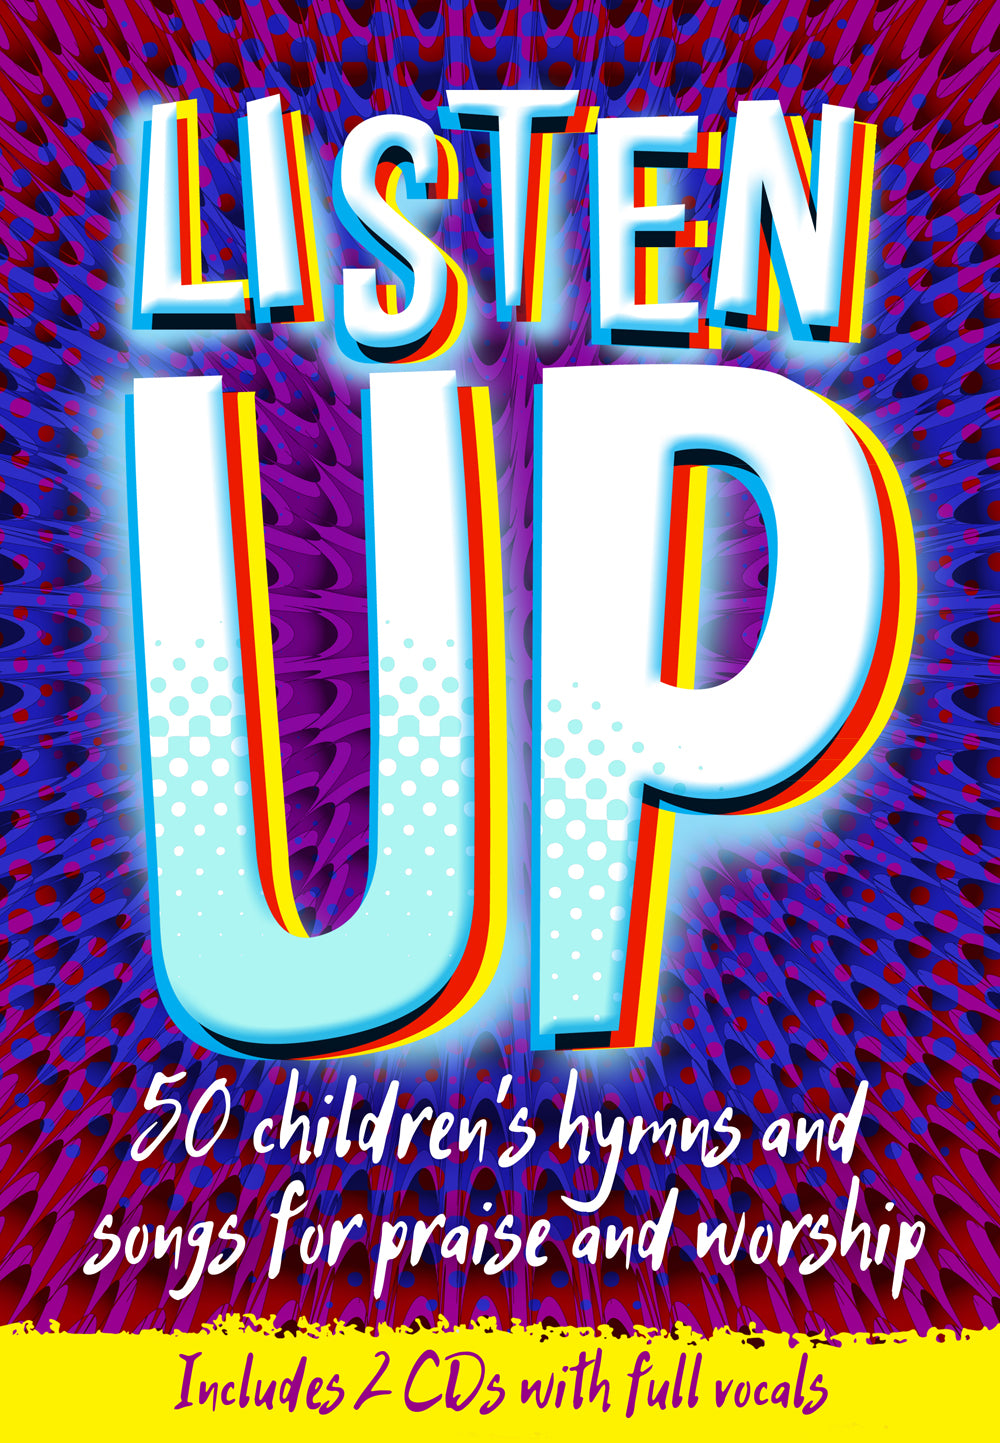 Listen UpListen Up